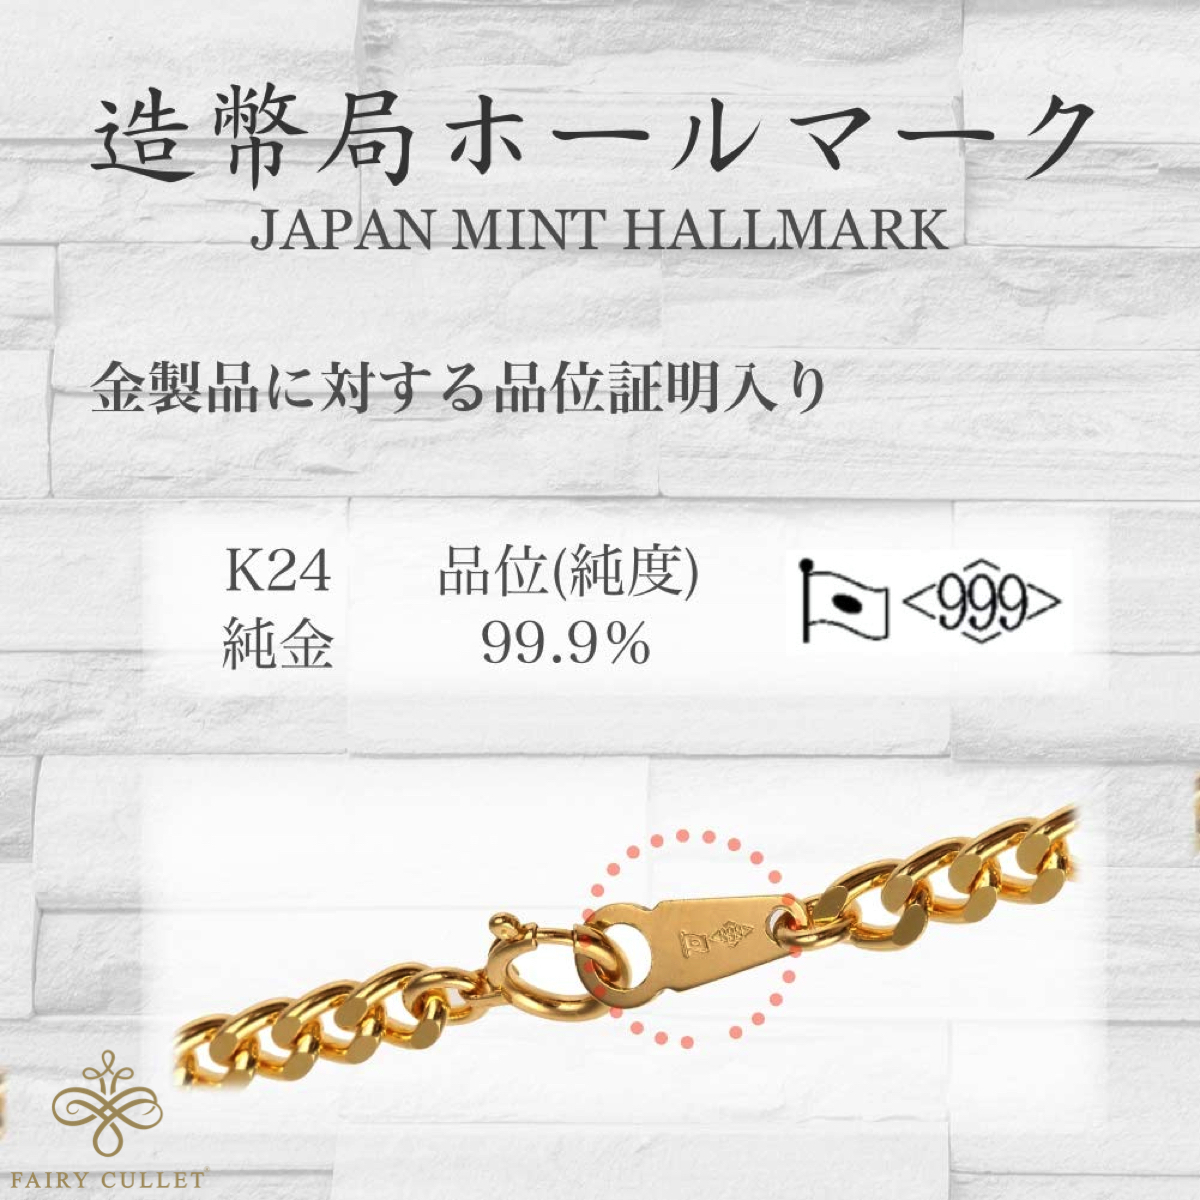 24金ネックレス K24 2面喜平チェーン 日本製 純金 検定印 30g 50cm 引き輪